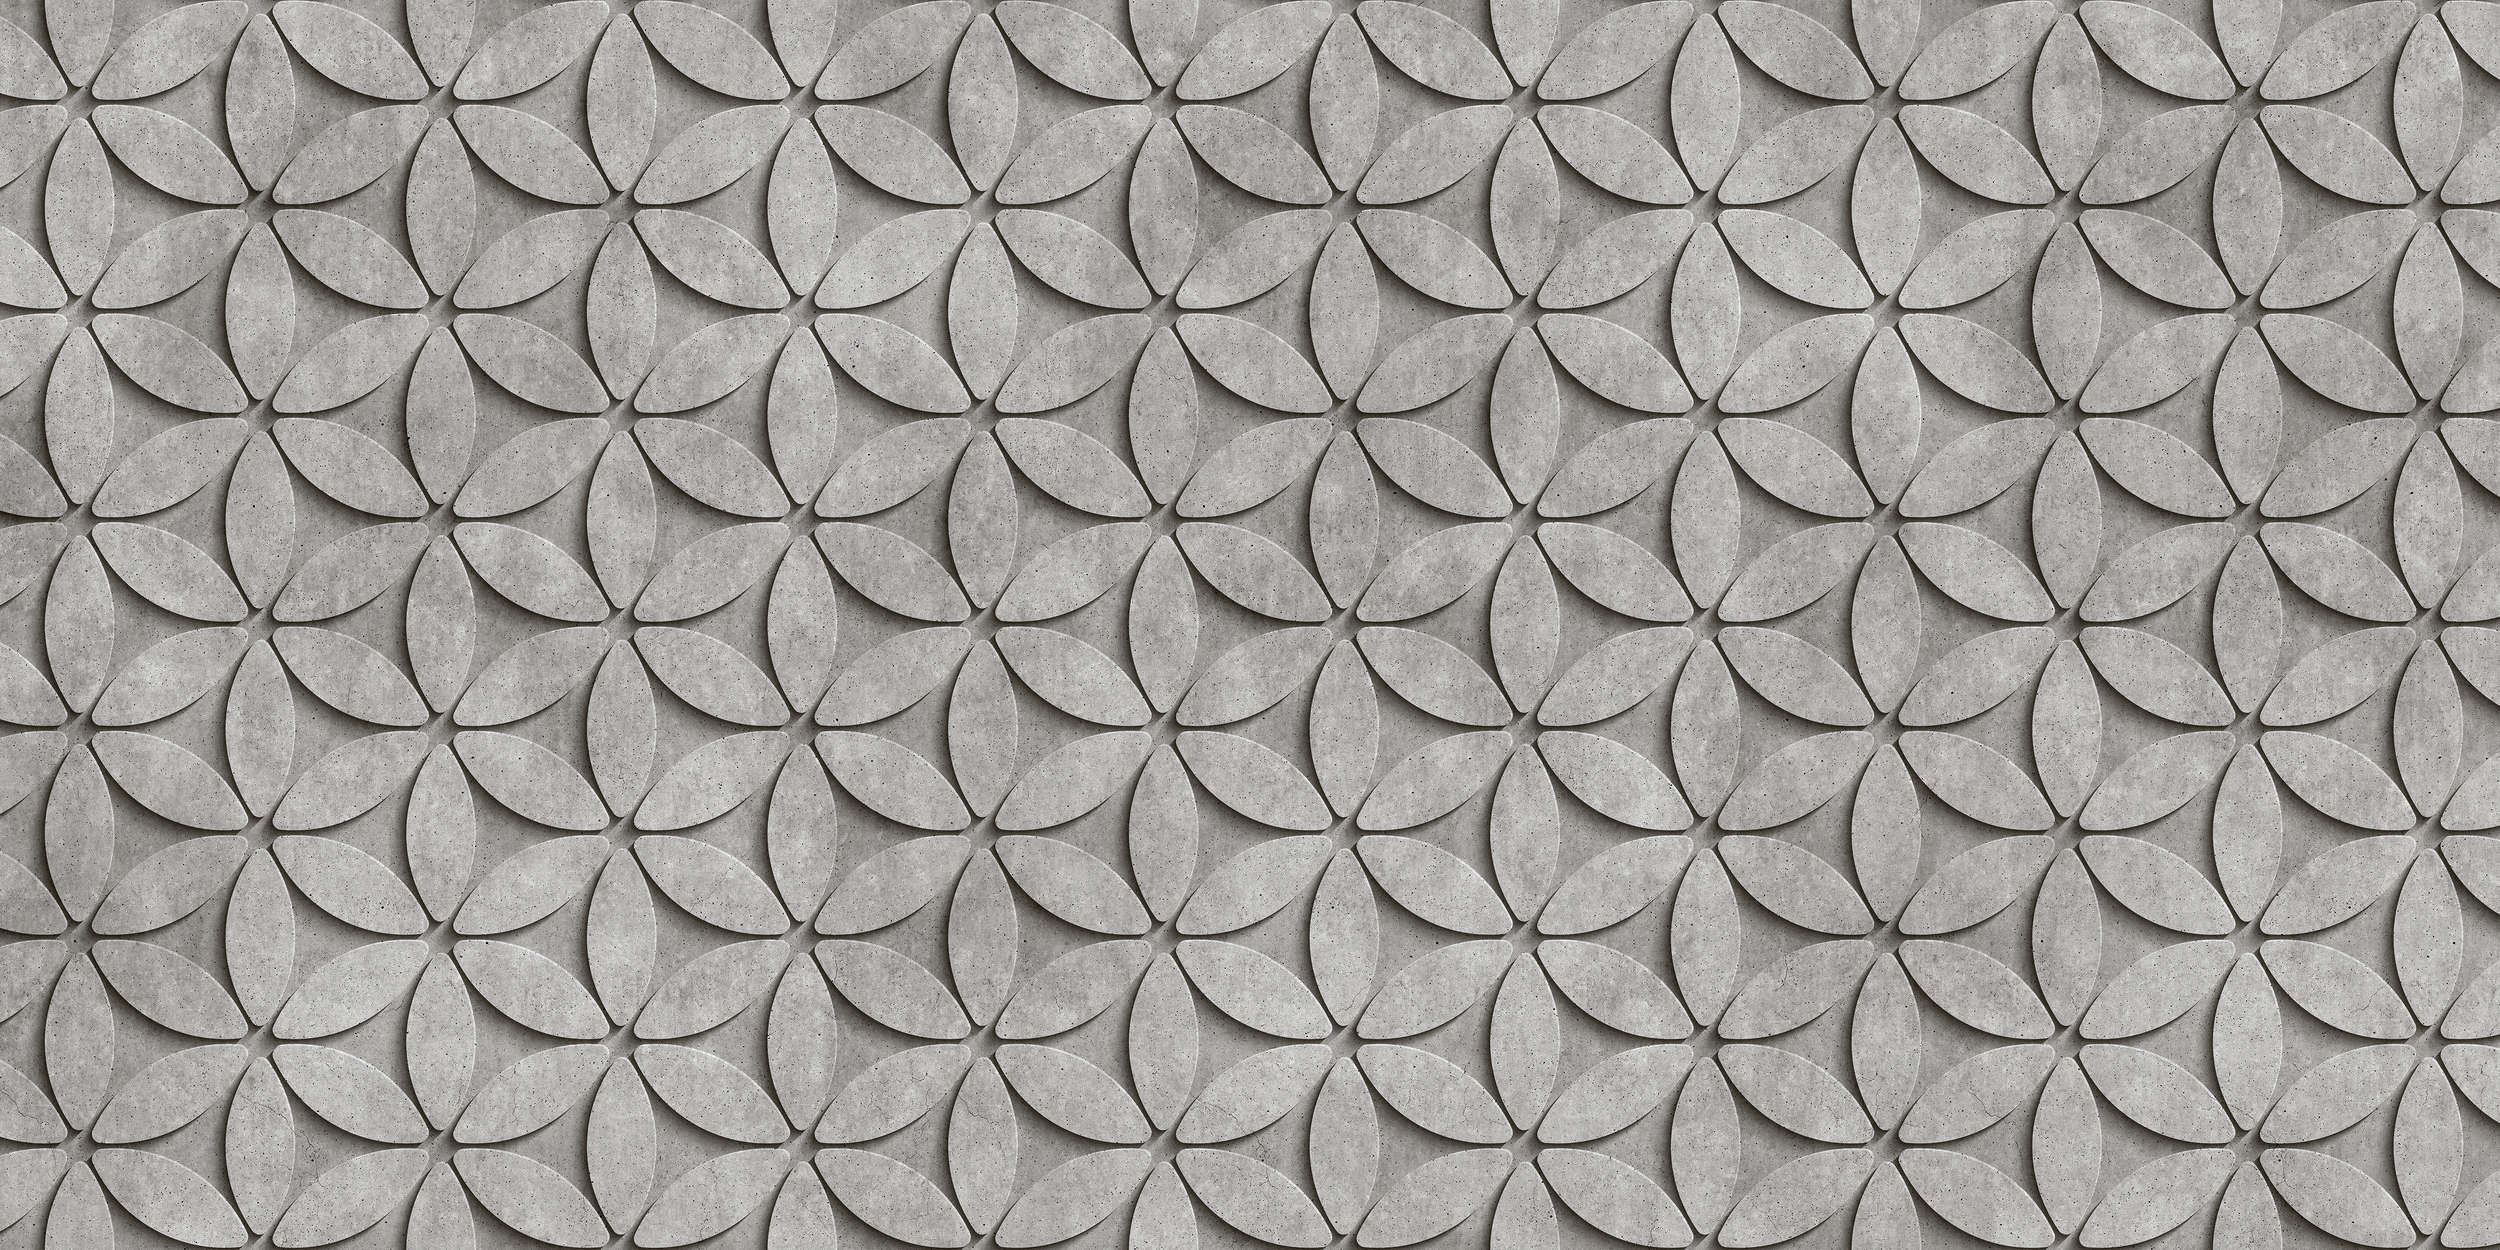             Tegel 1 - Onderlaag behang in Cool 3D Concrete Polygonen - Grijs, Zwart | Pearl glad vlies
        